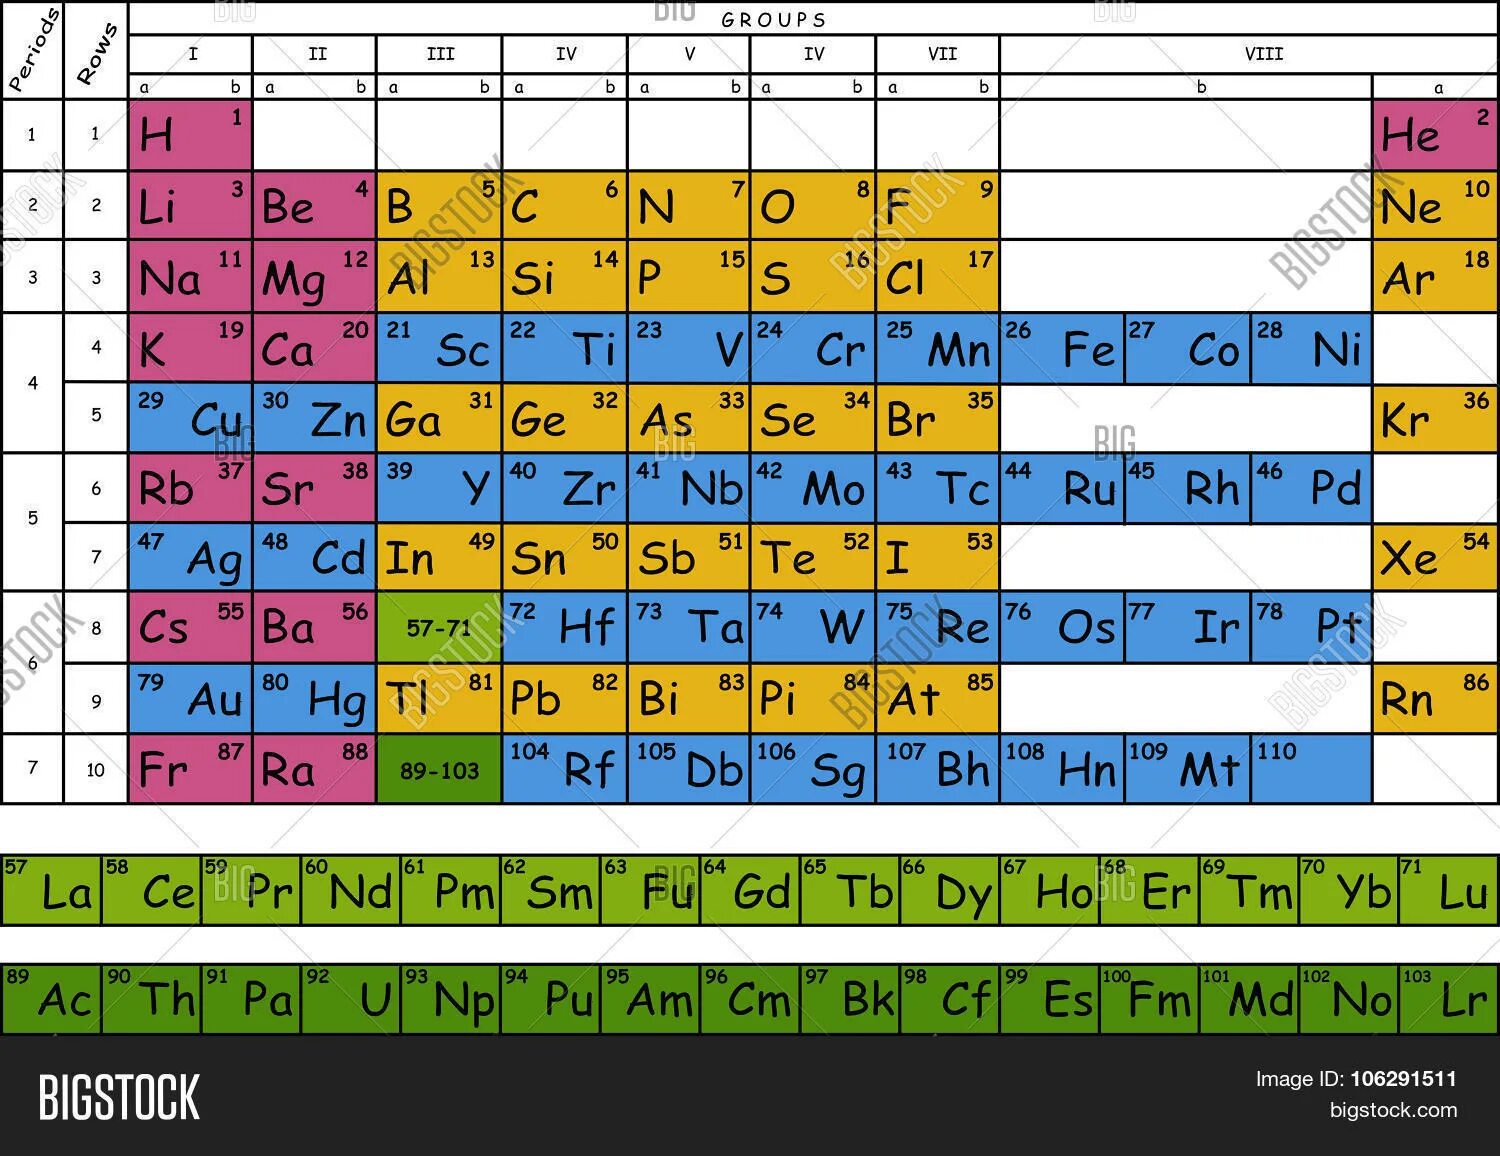 26 элемент. Менделеева таблица Менделеева ЕГЭ. Таблица хим элементов Менделеева ЕГЭ. Химическая таблица элементов Менделеева цветная. Периодическая система химических элементов Менделеева ЕГЭ.